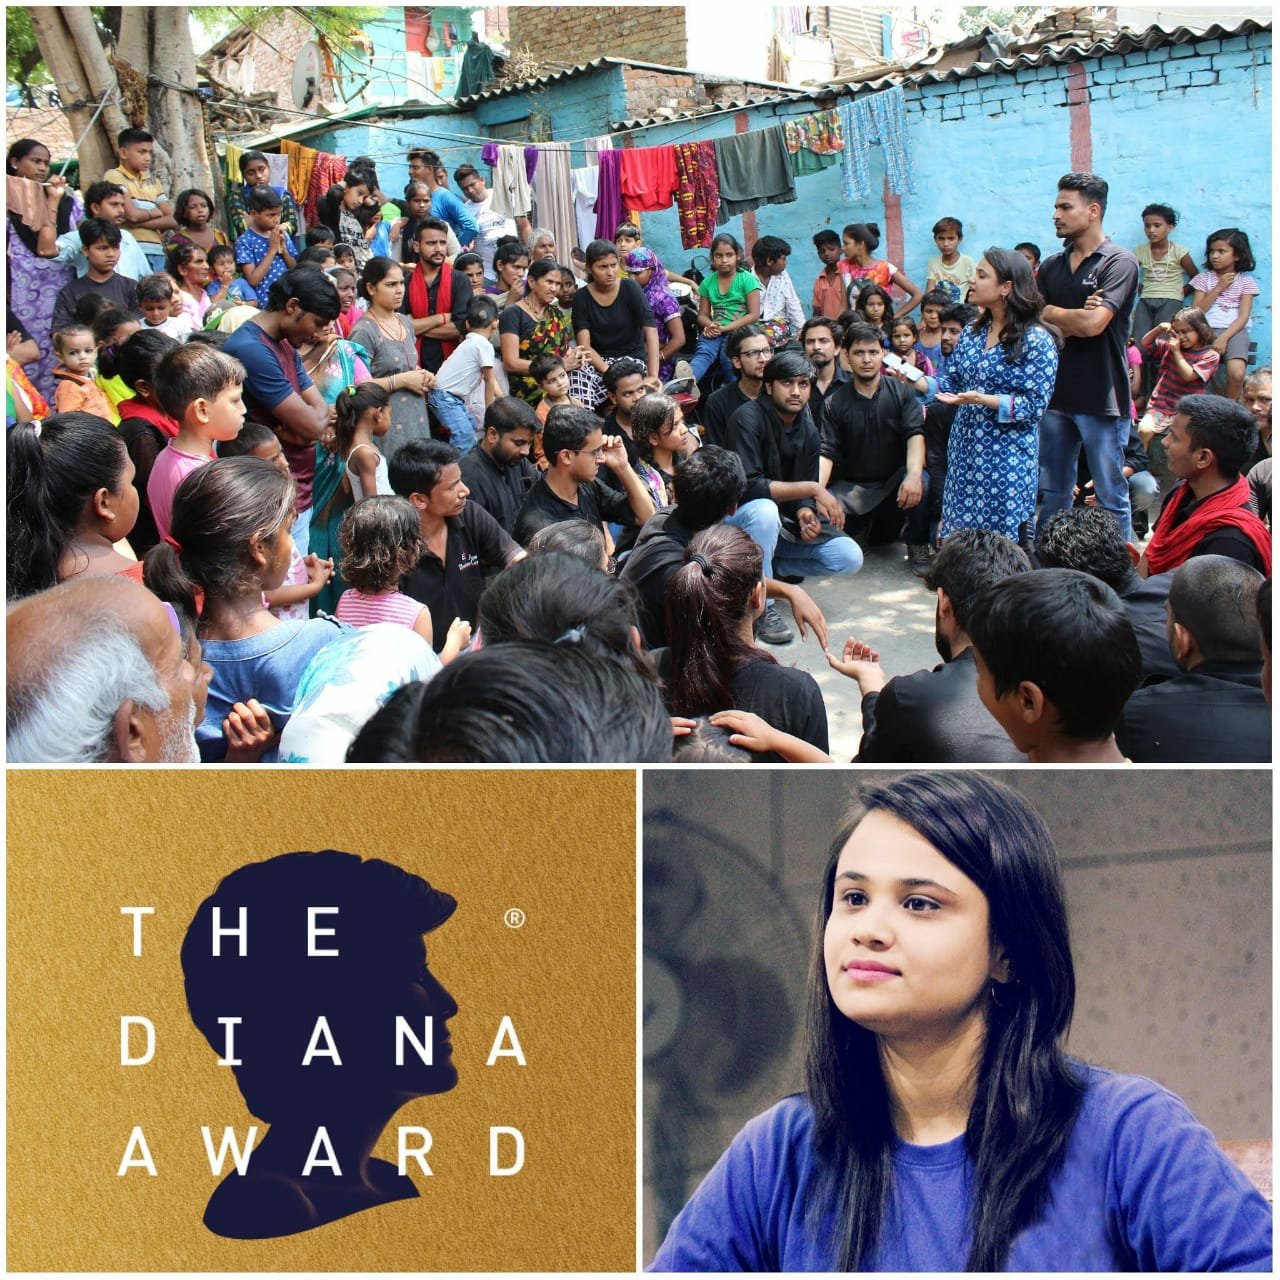 भारत की तान्या चड्ढा ‘द डायना अवार्ड’ से सम्मानित, स्लम एरिया की सबसे युवा सोशल वर्कर हैं तान्या चड्ढा | New India Times